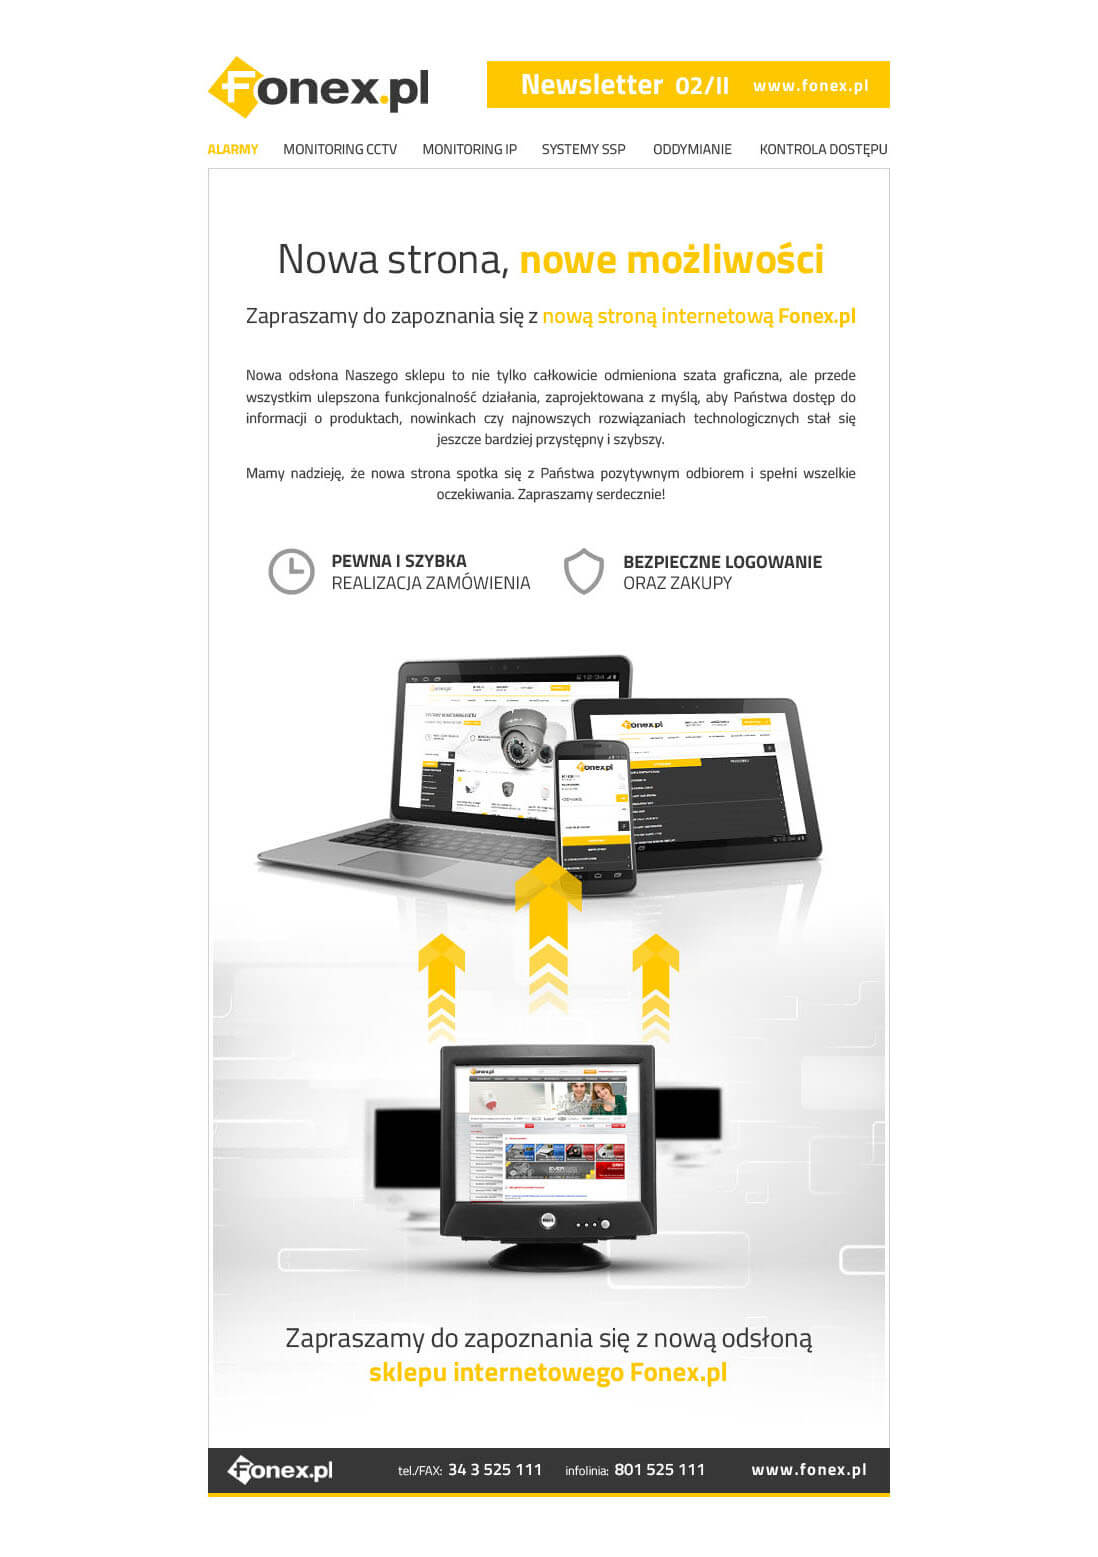 Fonex.pl - Nowa strona, nowe możliwości